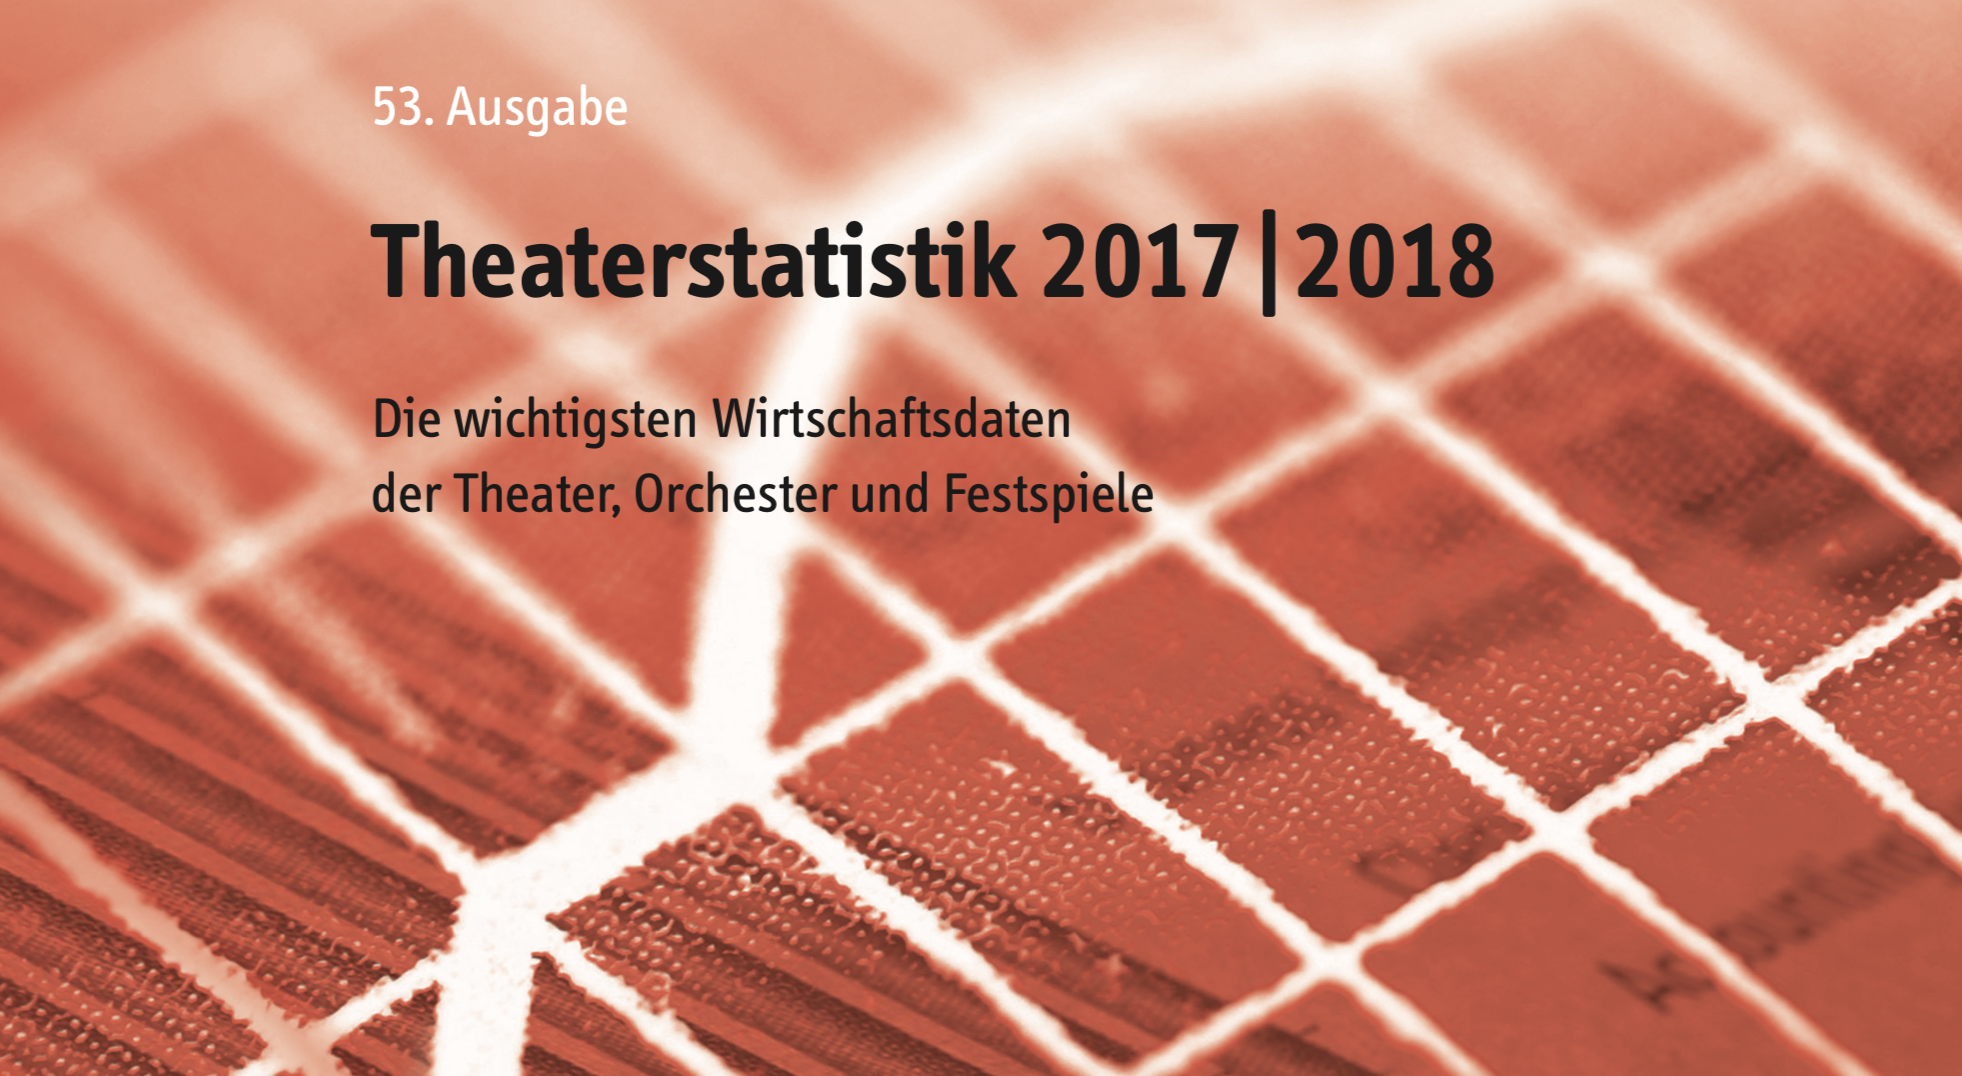 Die Theaterstatistik für 2017/18